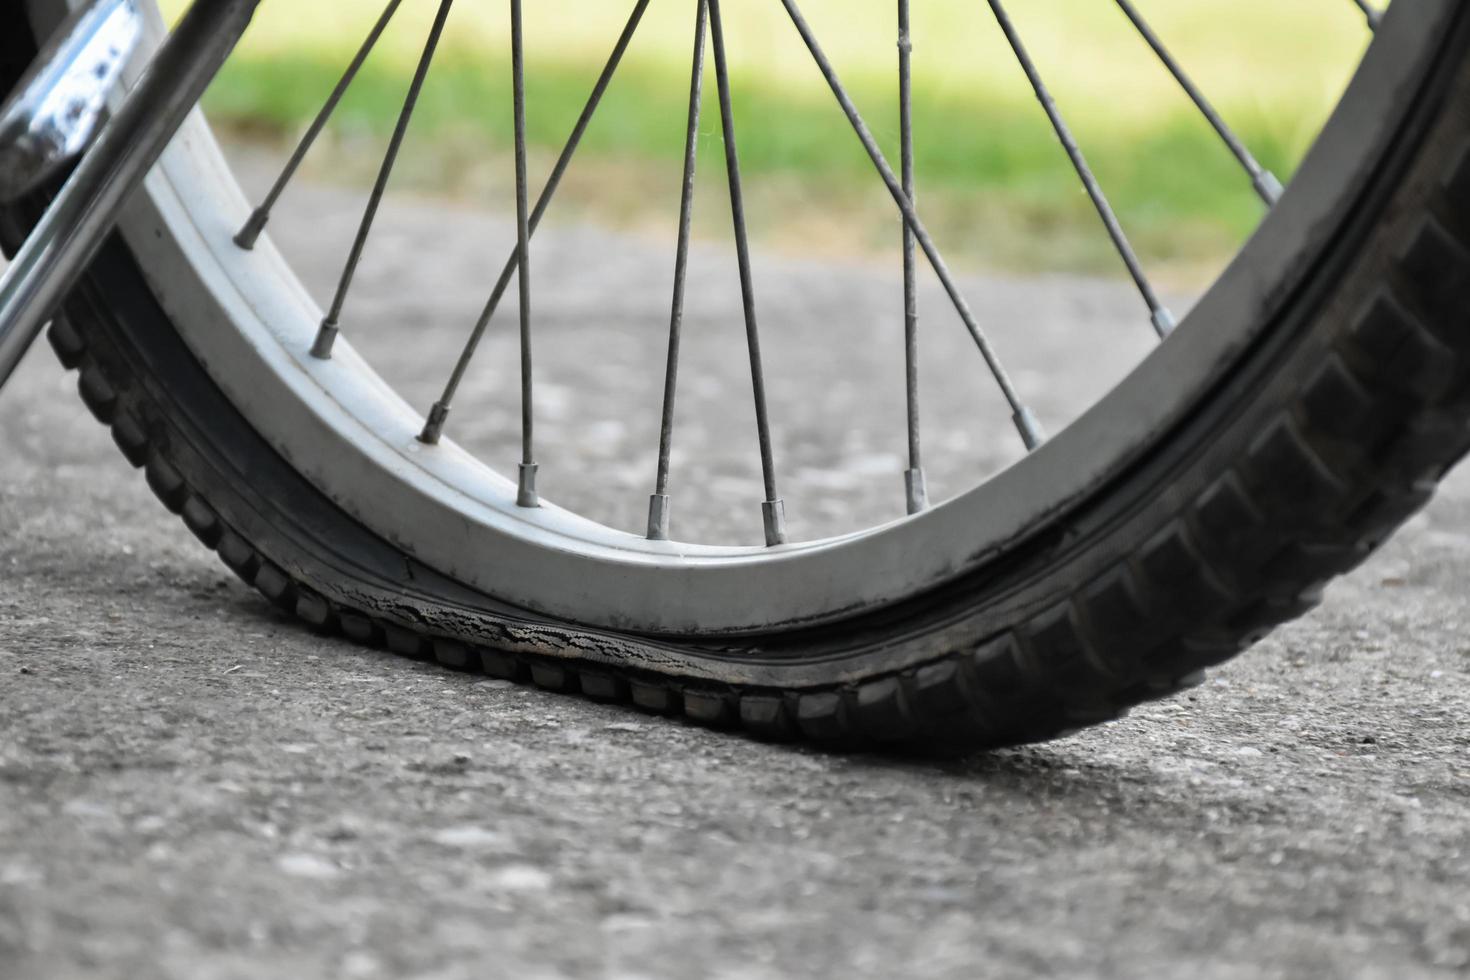 vista de cerca de la bicicleta que tiene un neumático desinflado y estacionado en el pavimento, fondo borroso. enfoque suave y selectivo en el neumático. foto